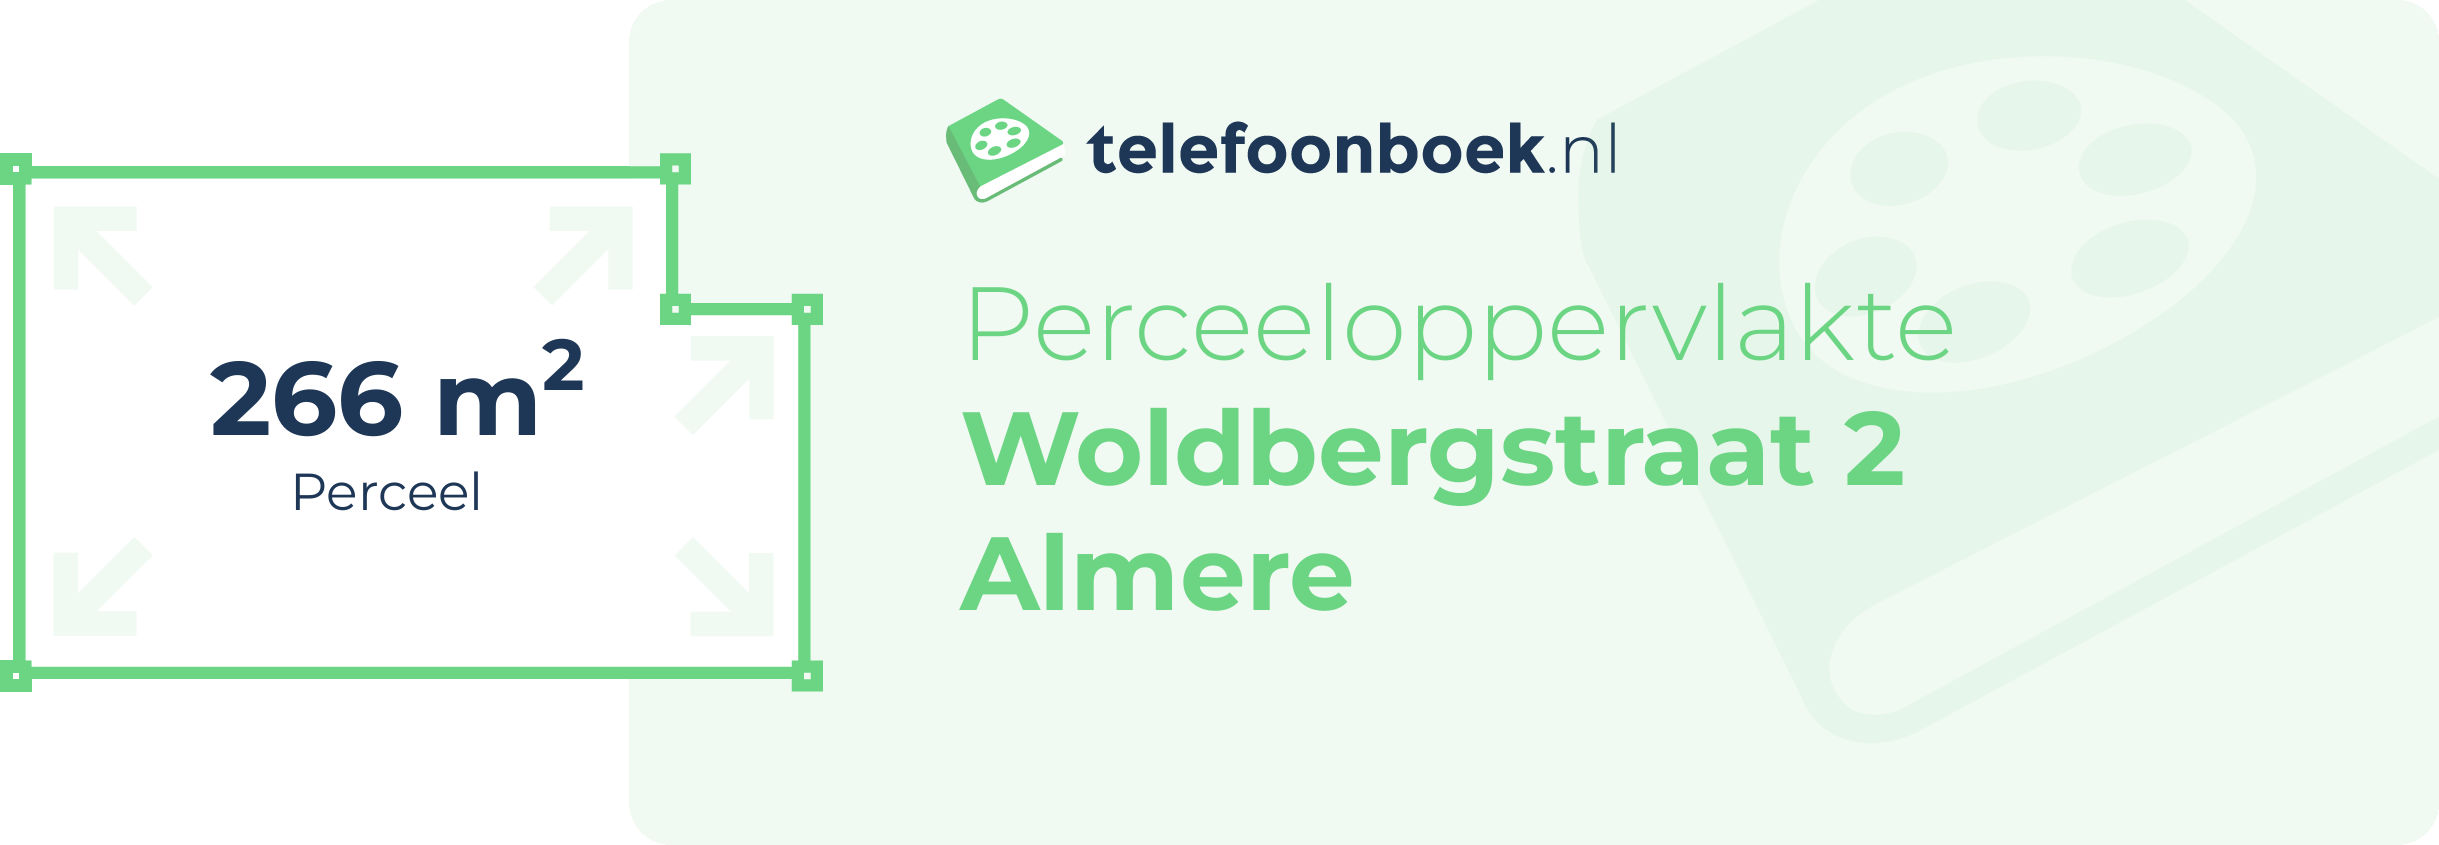 Perceeloppervlakte Woldbergstraat 2 Almere